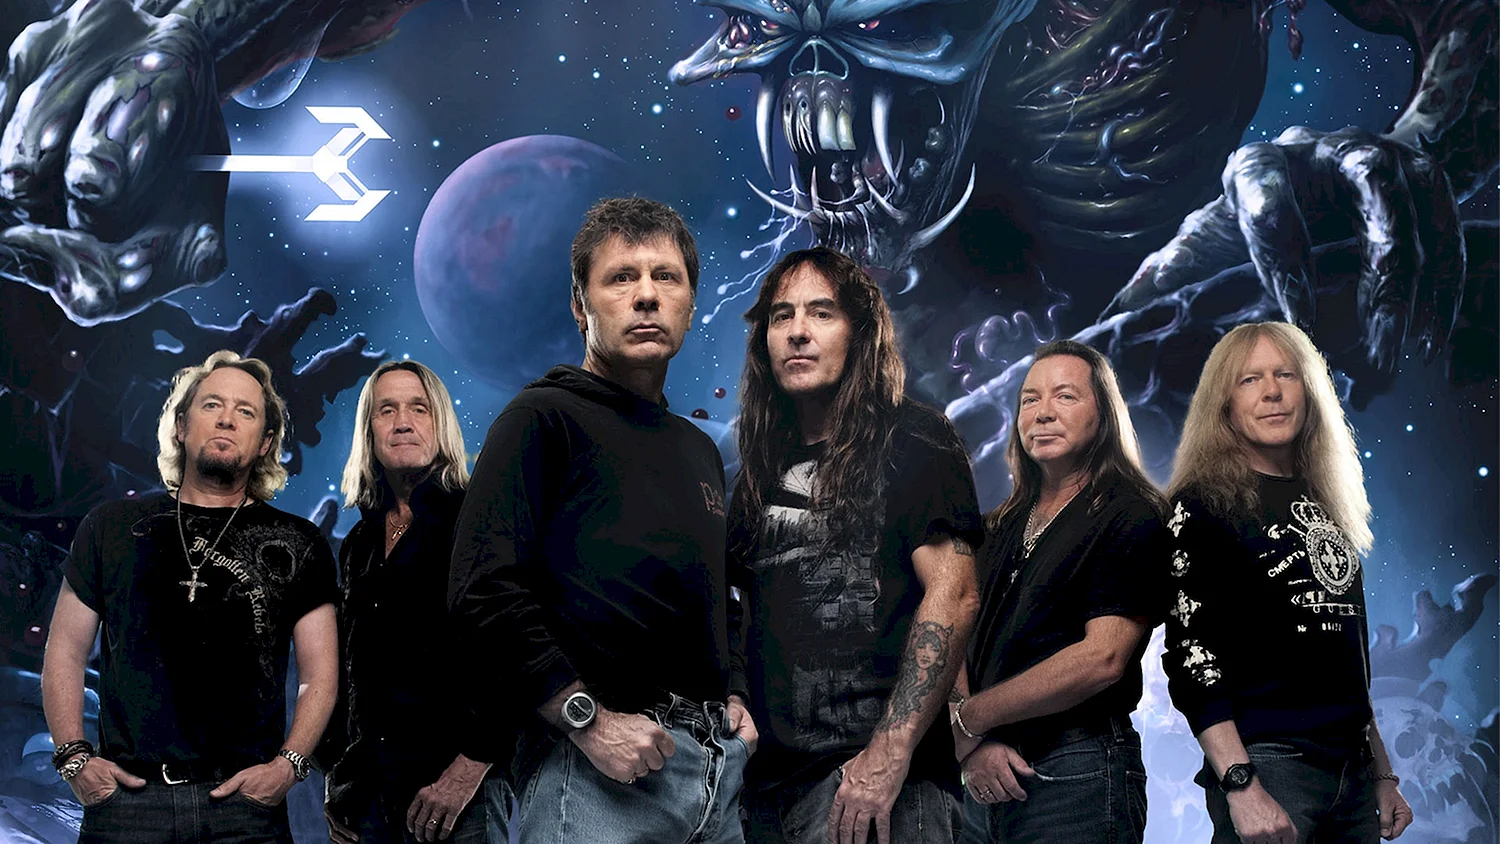 Группа Iron Maiden